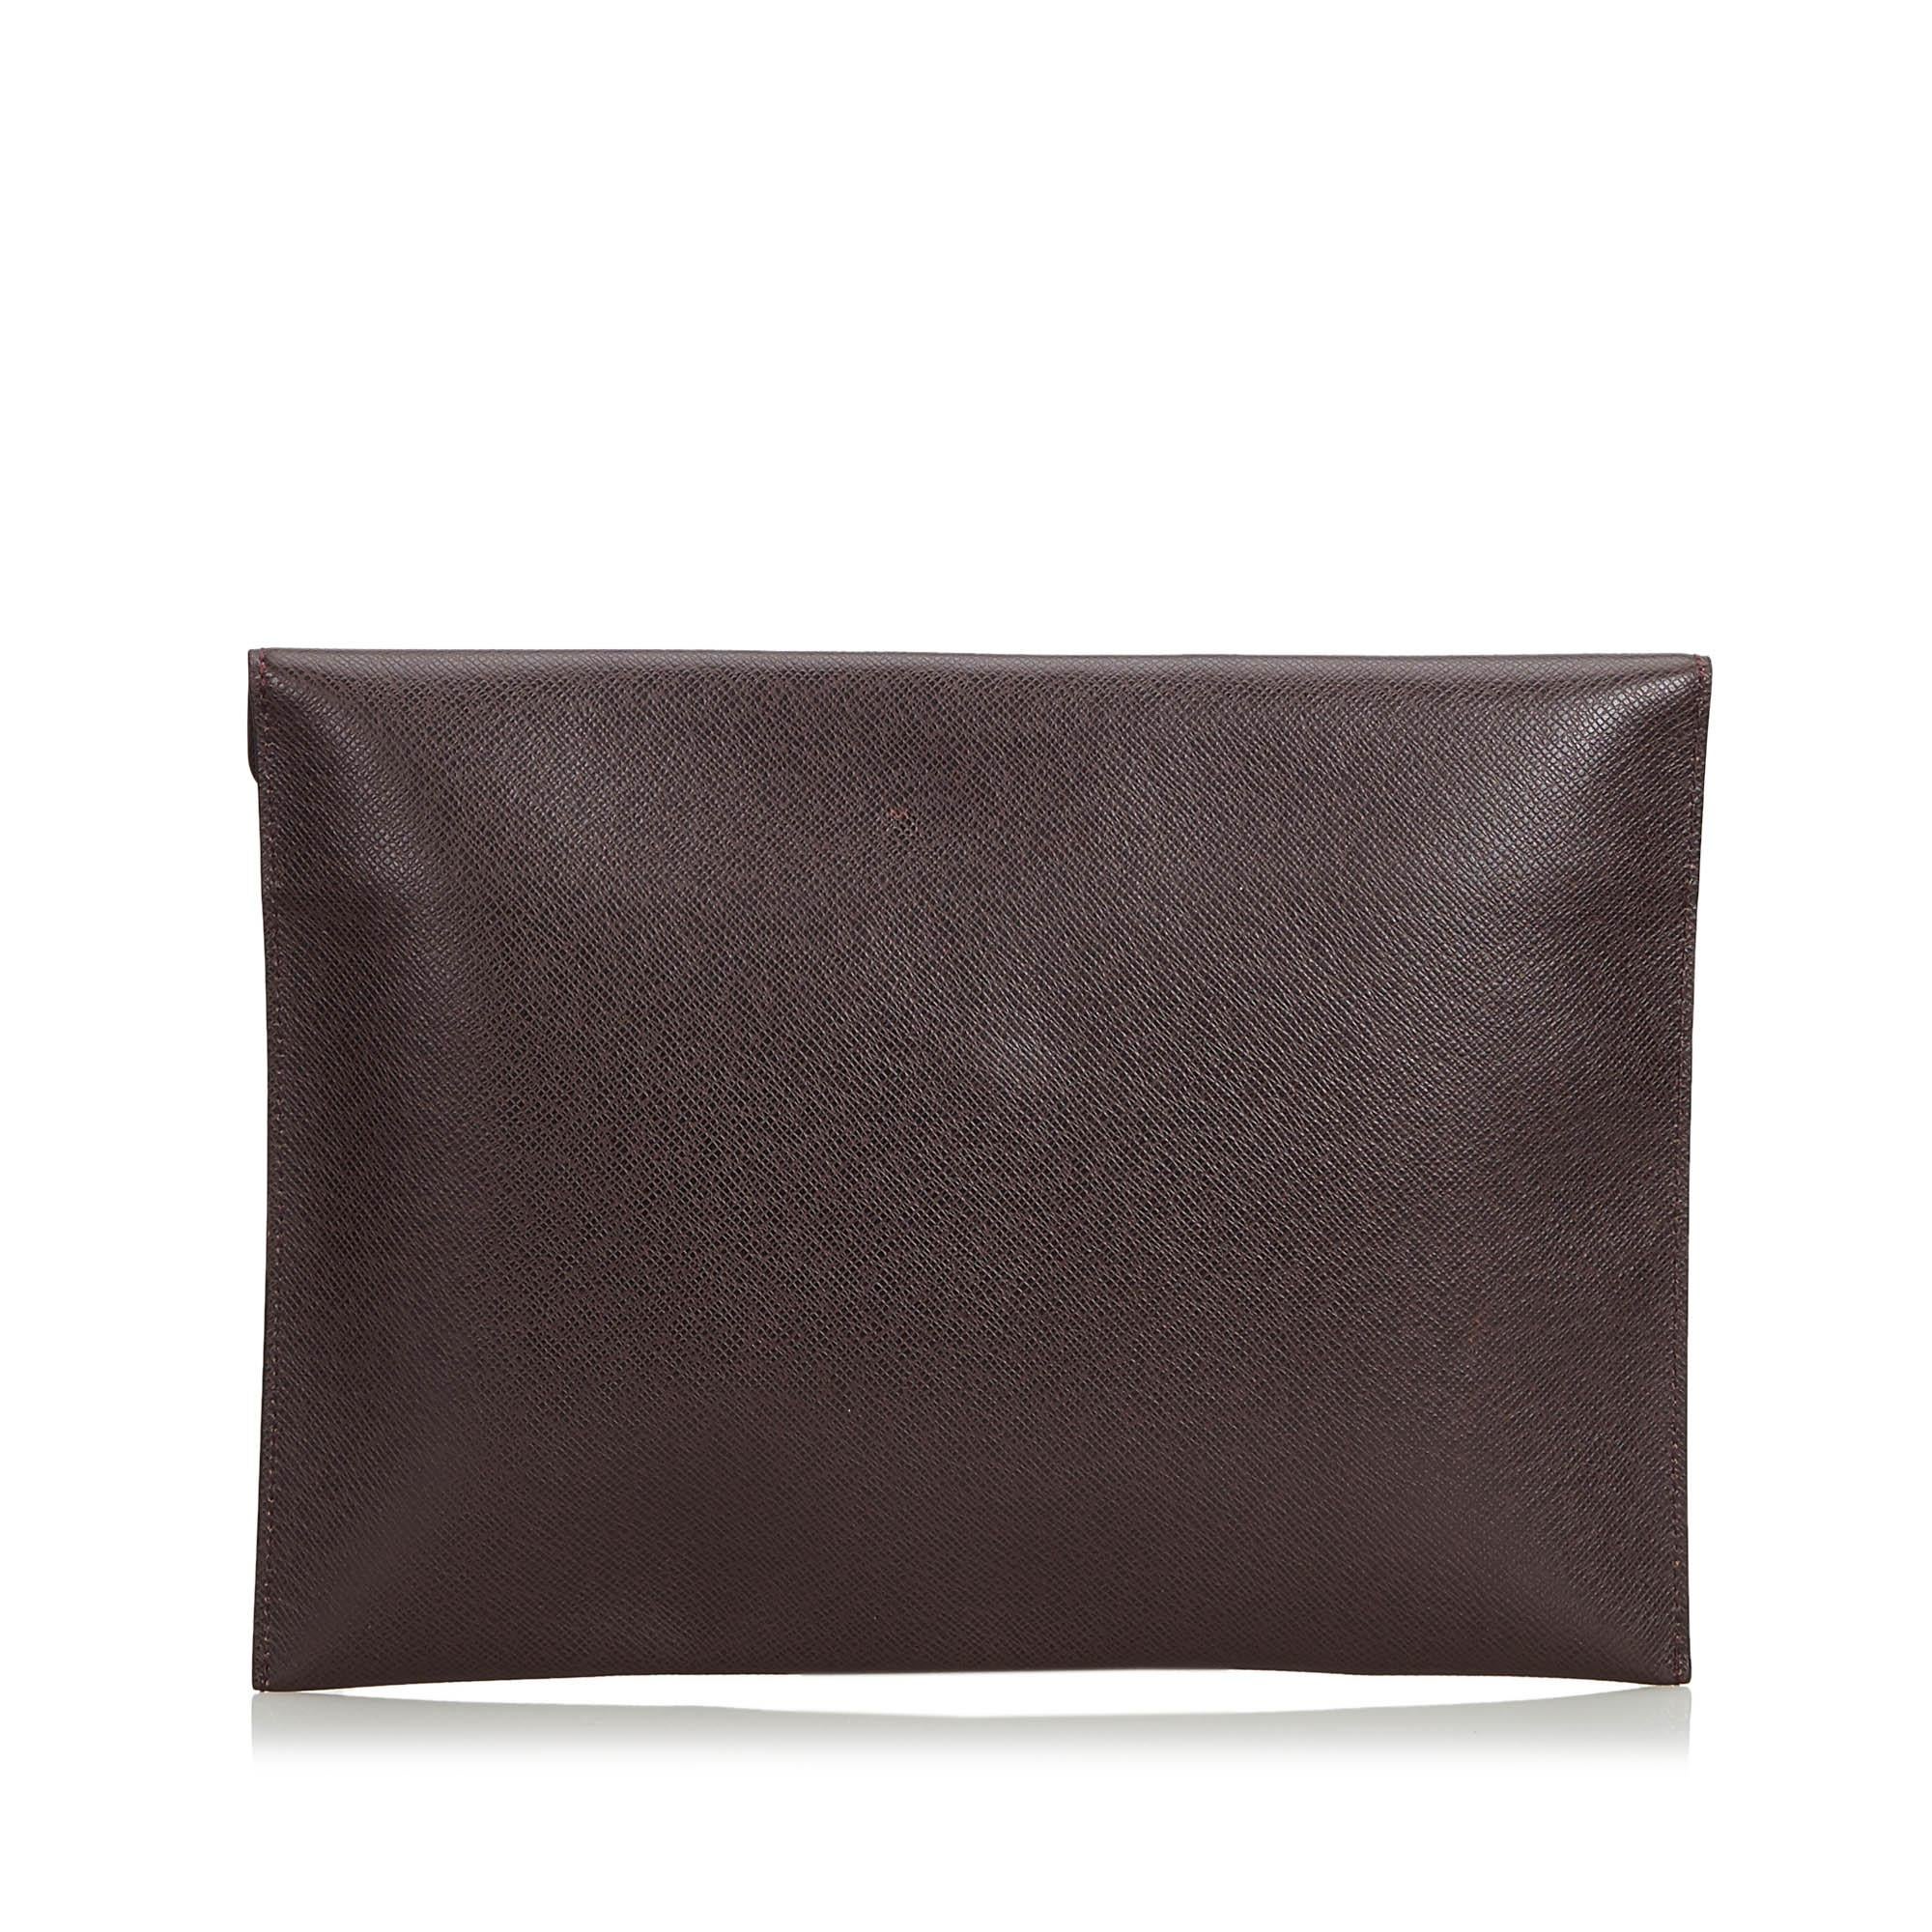 Black Vintage Authentic Louis Vuitton Brown Document Case Clutch Bag FRANCE SMALL  For Sale